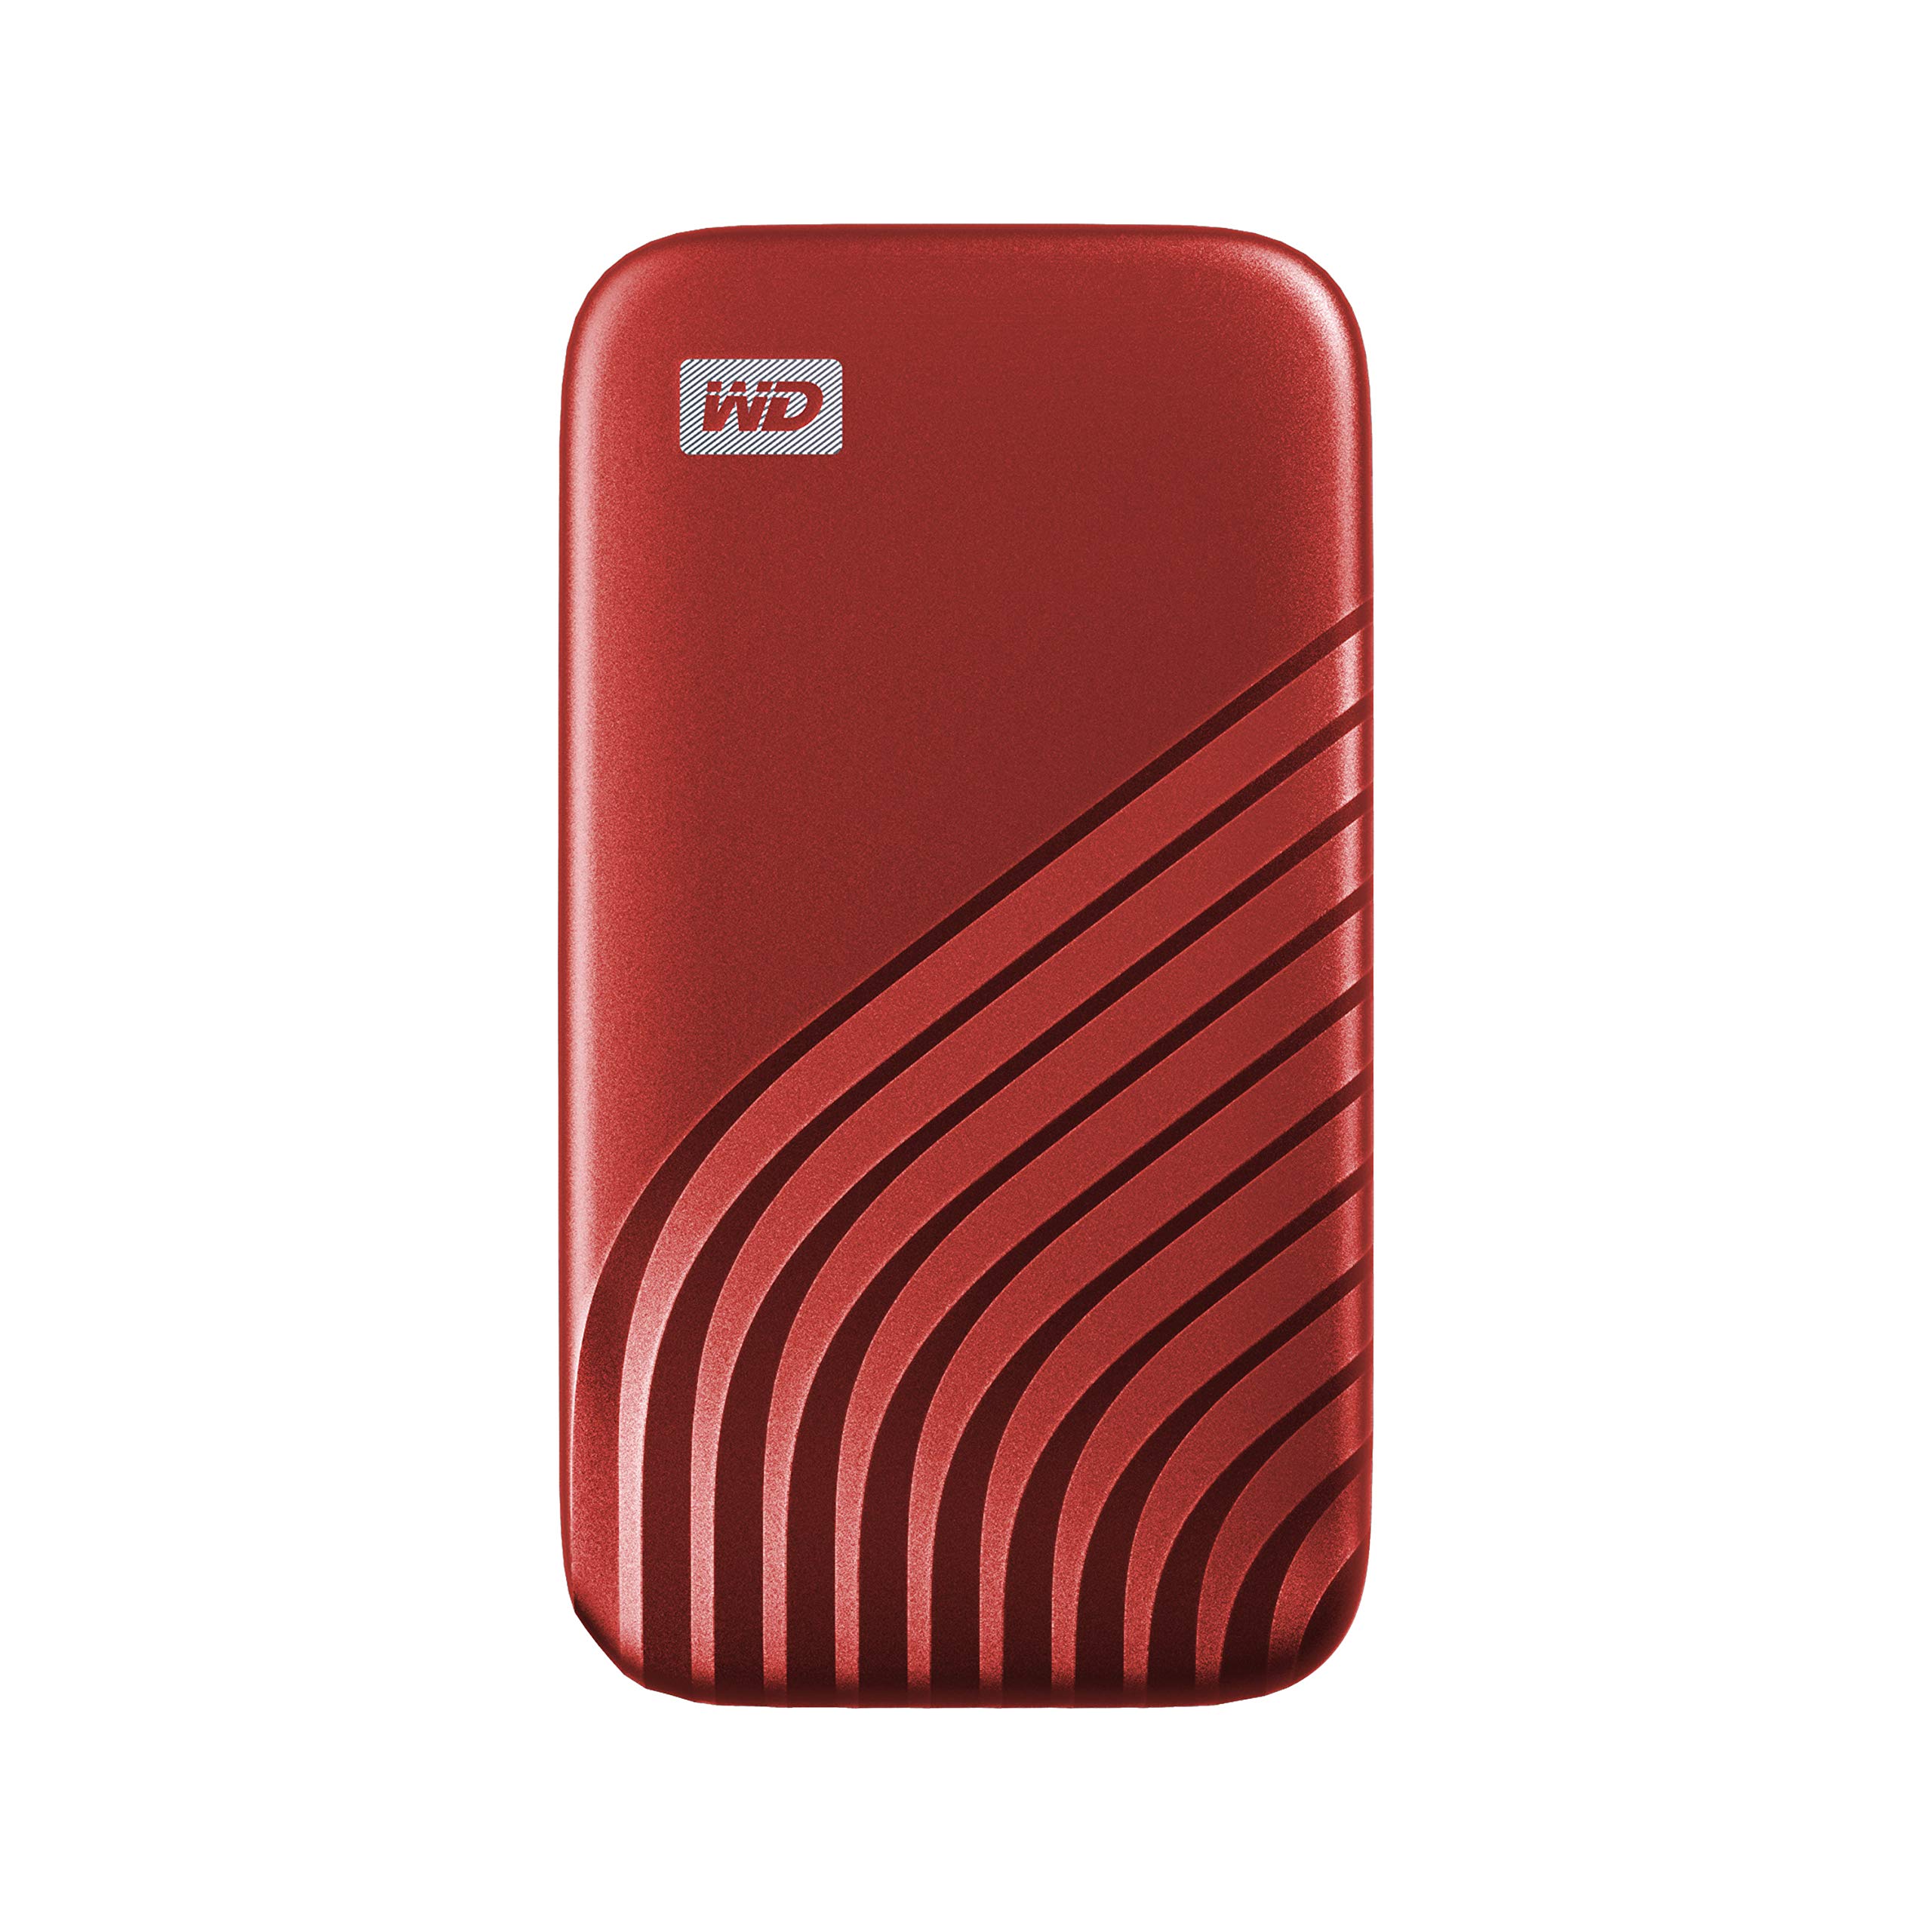 MYPASSPORT SSD 500GB RED